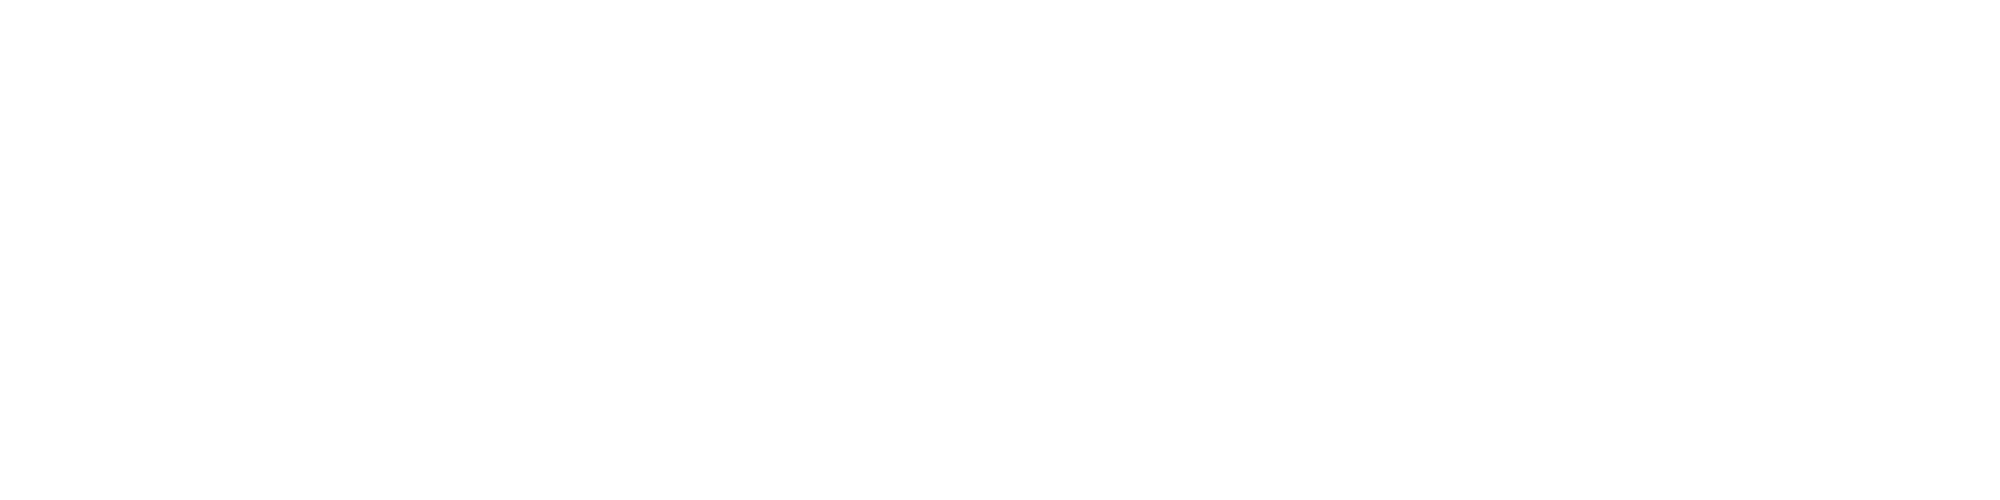 Max Mara Logo - Marco Bruhin - Weekend MaxMara